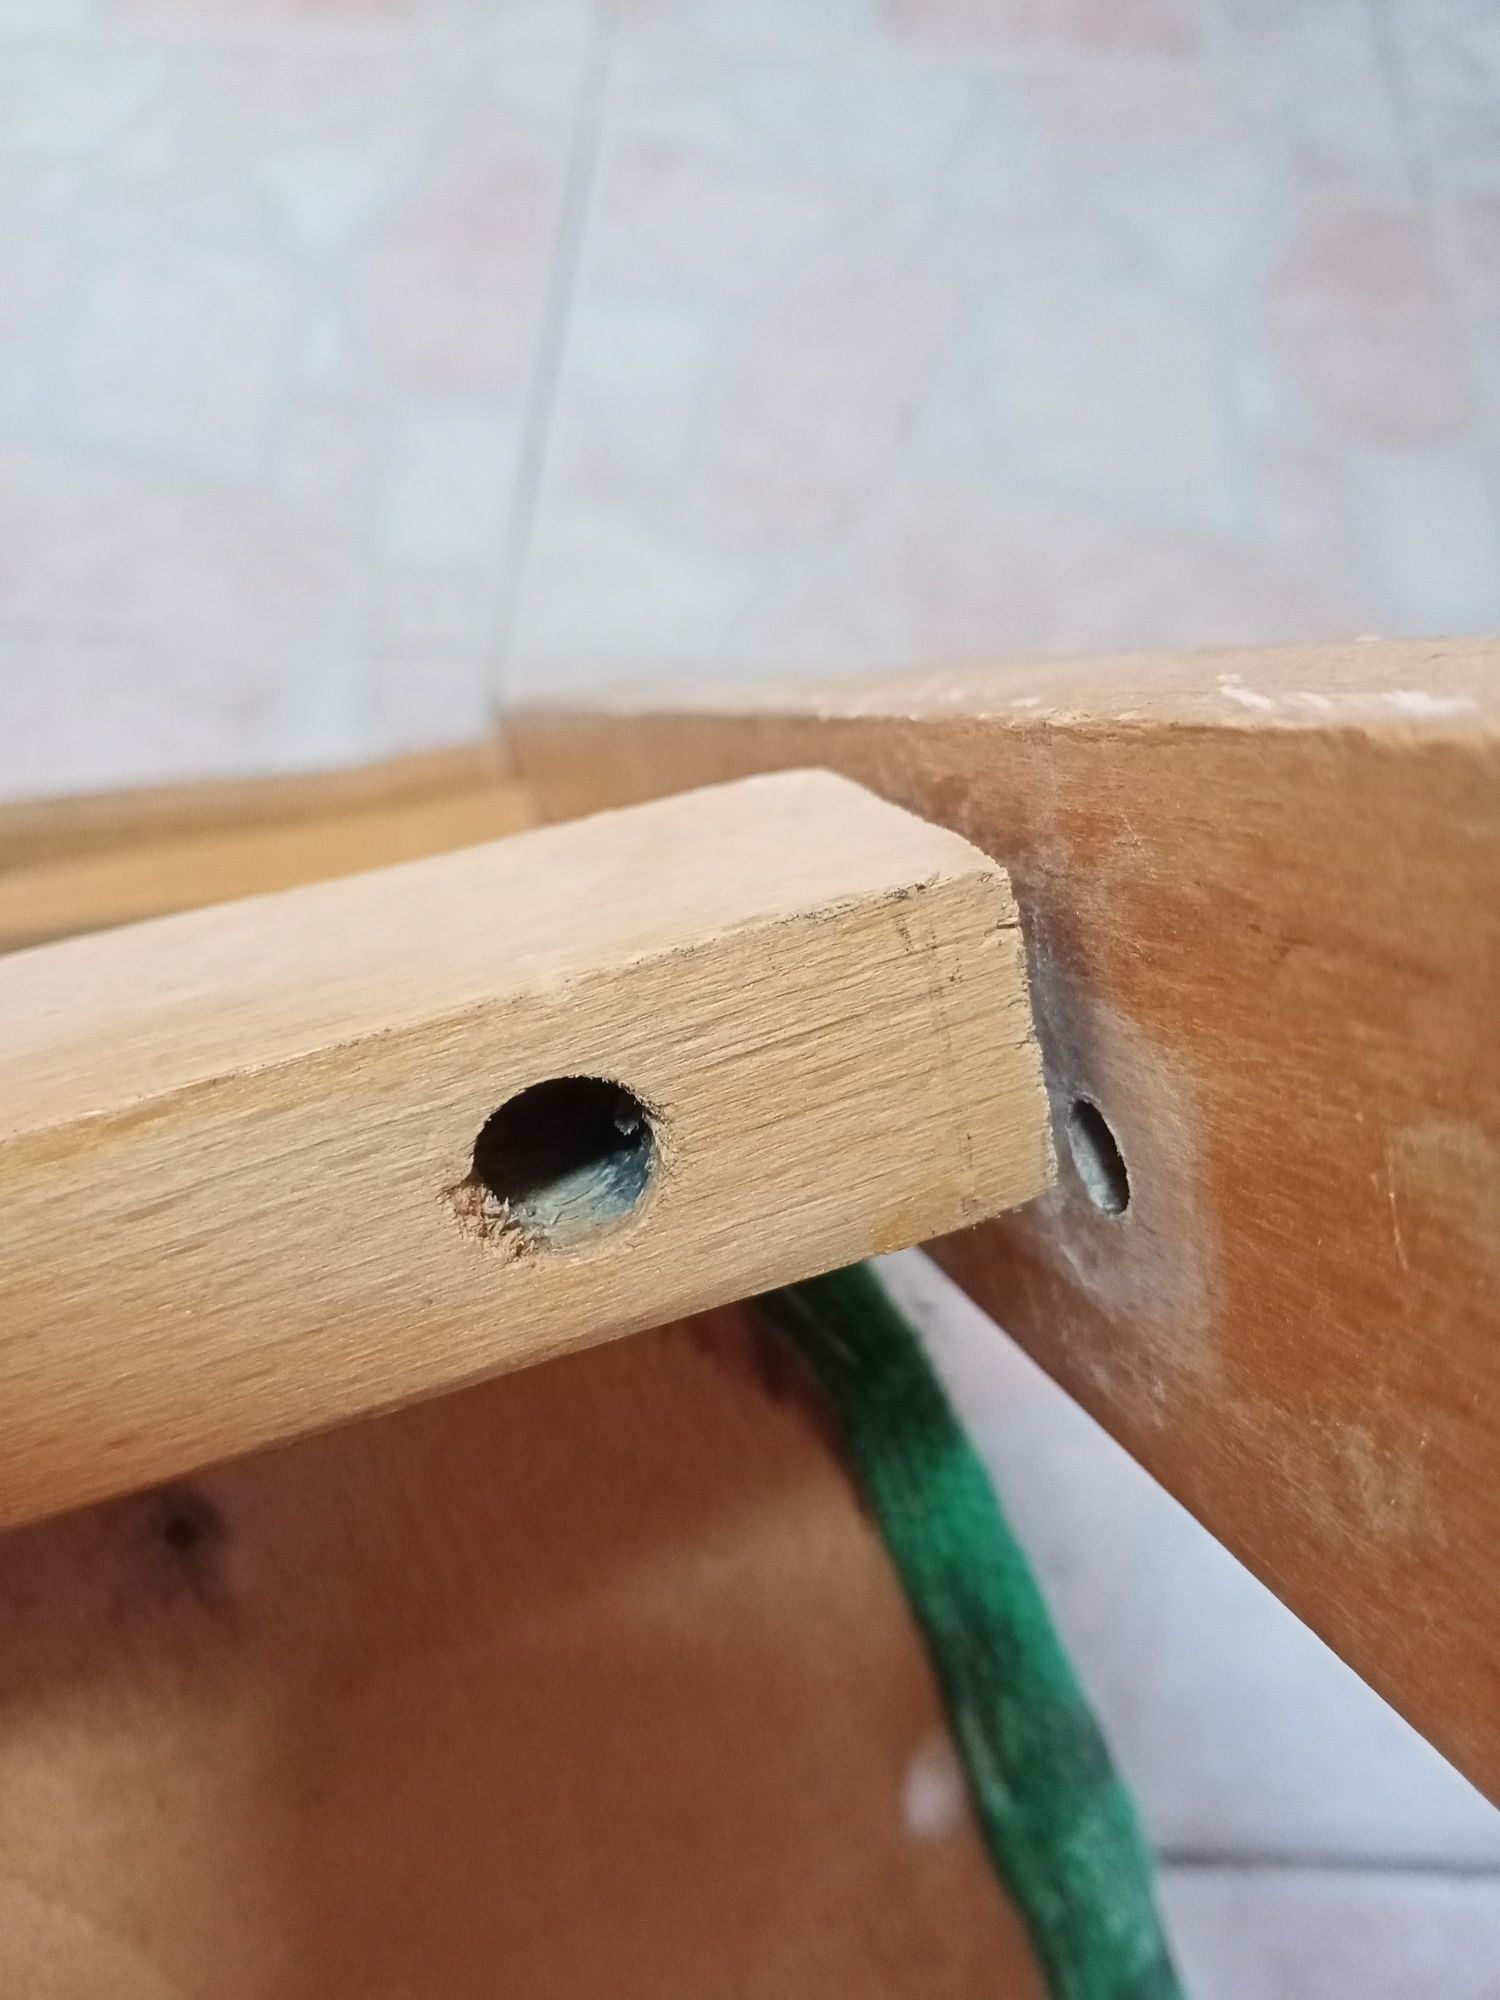 Стул стульчик деревянный со спинкой тяжёлый